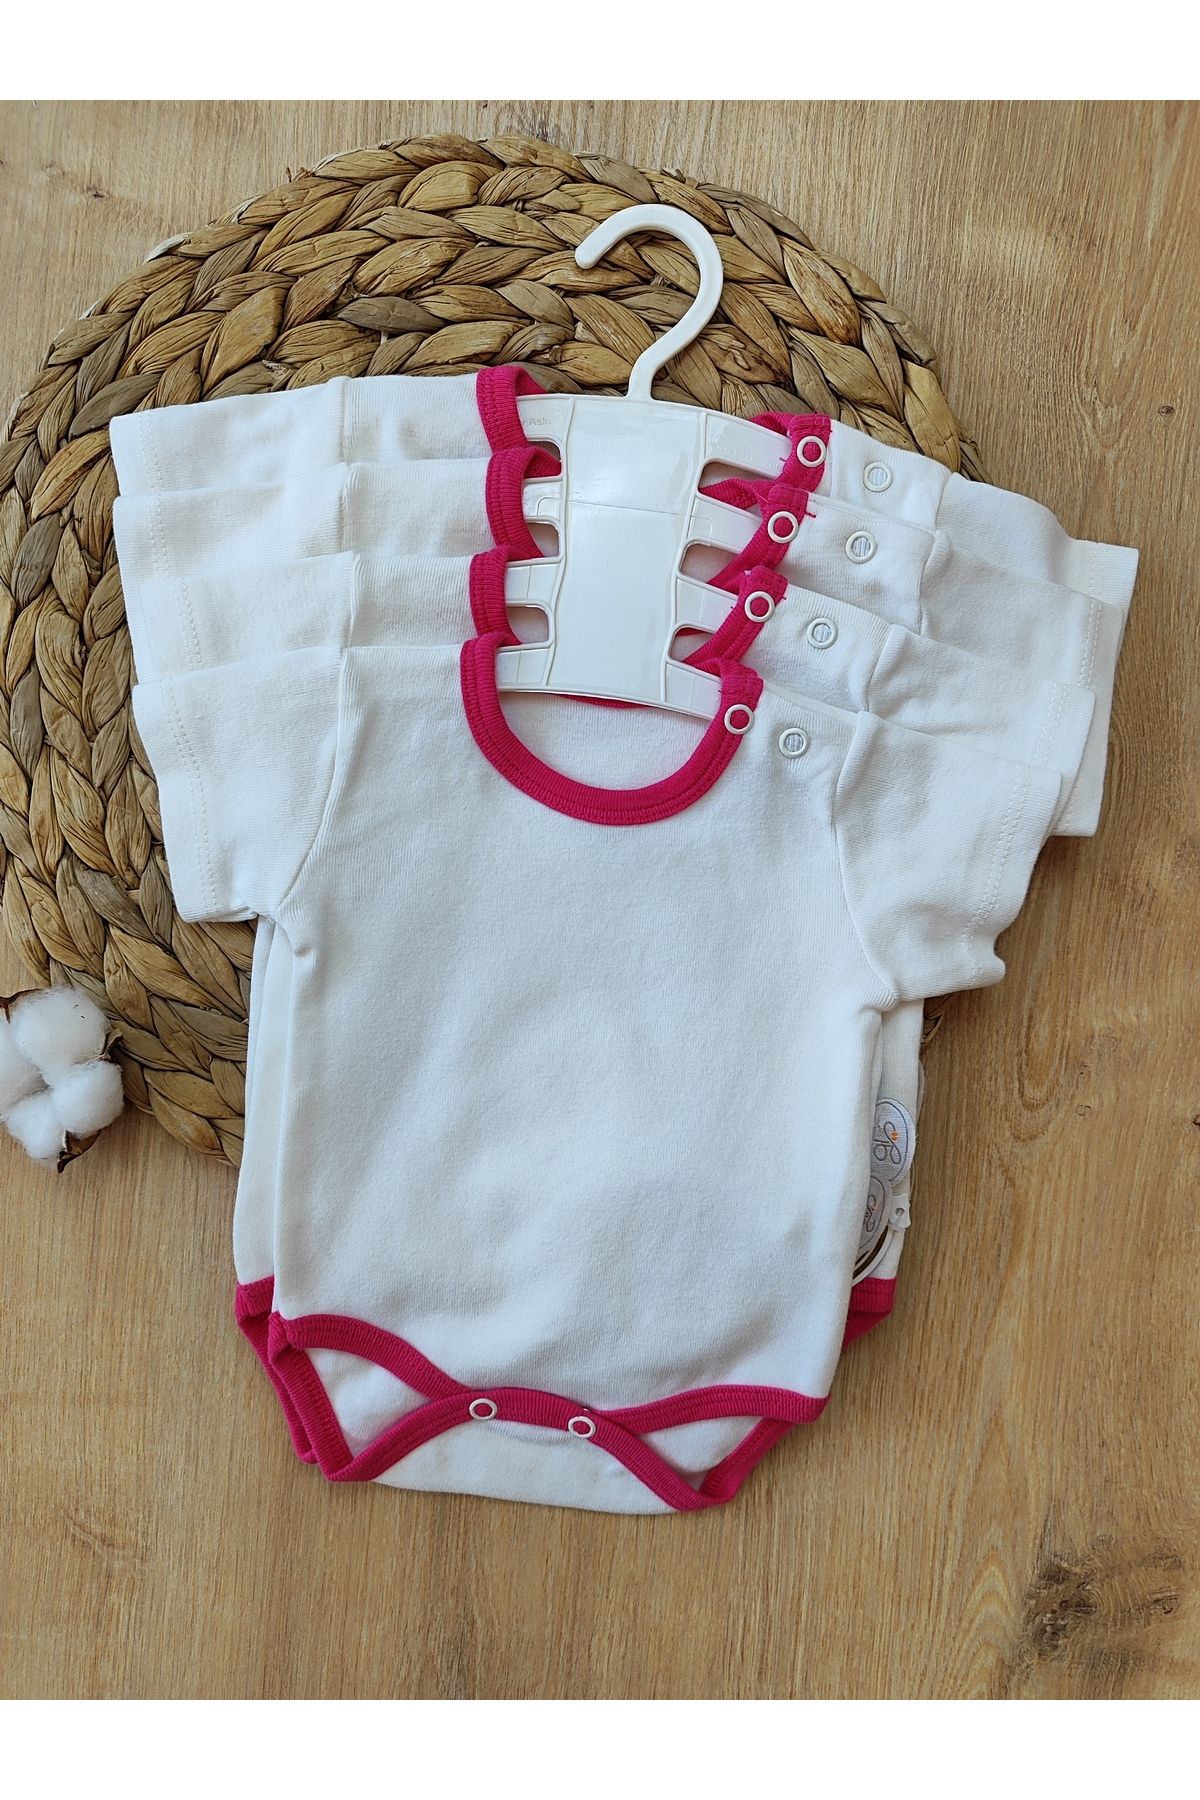 Tomuycuk Bebek Zıbını 4 Bedenli (56-62-68-74CM)çıtçıtlı Body Iç Giyim Pamuklu Mevsimlik Kısa Kollu